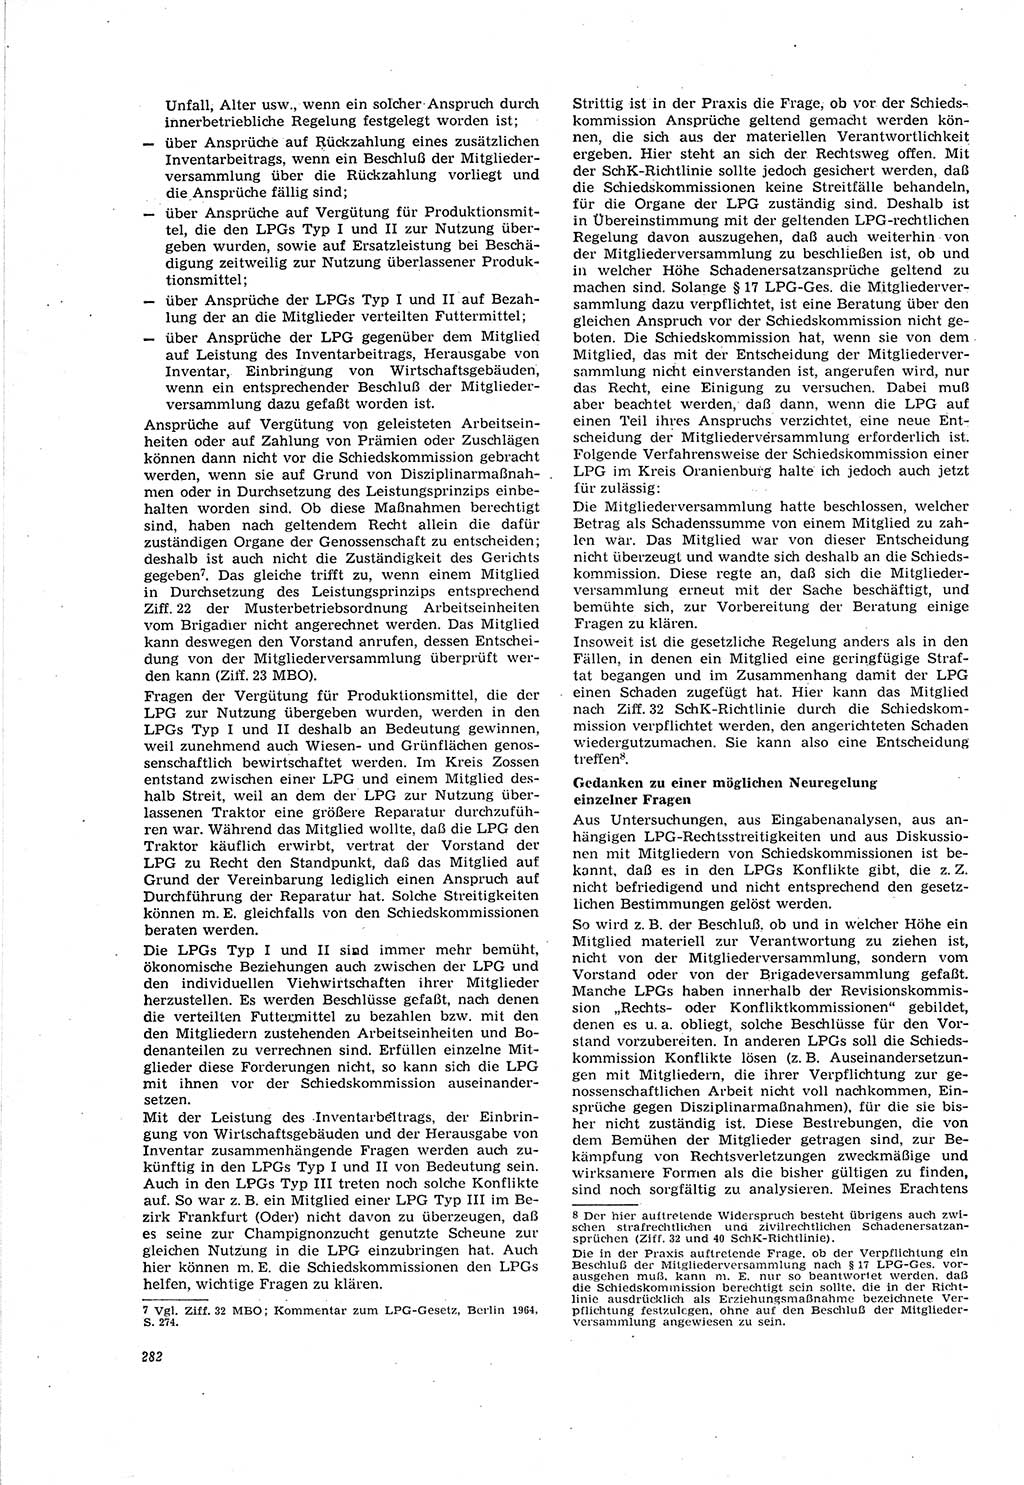 Neue Justiz (NJ), Zeitschrift für Recht und Rechtswissenschaft [Deutsche Demokratische Republik (DDR)], 20. Jahrgang 1966, Seite 282 (NJ DDR 1966, S. 282)